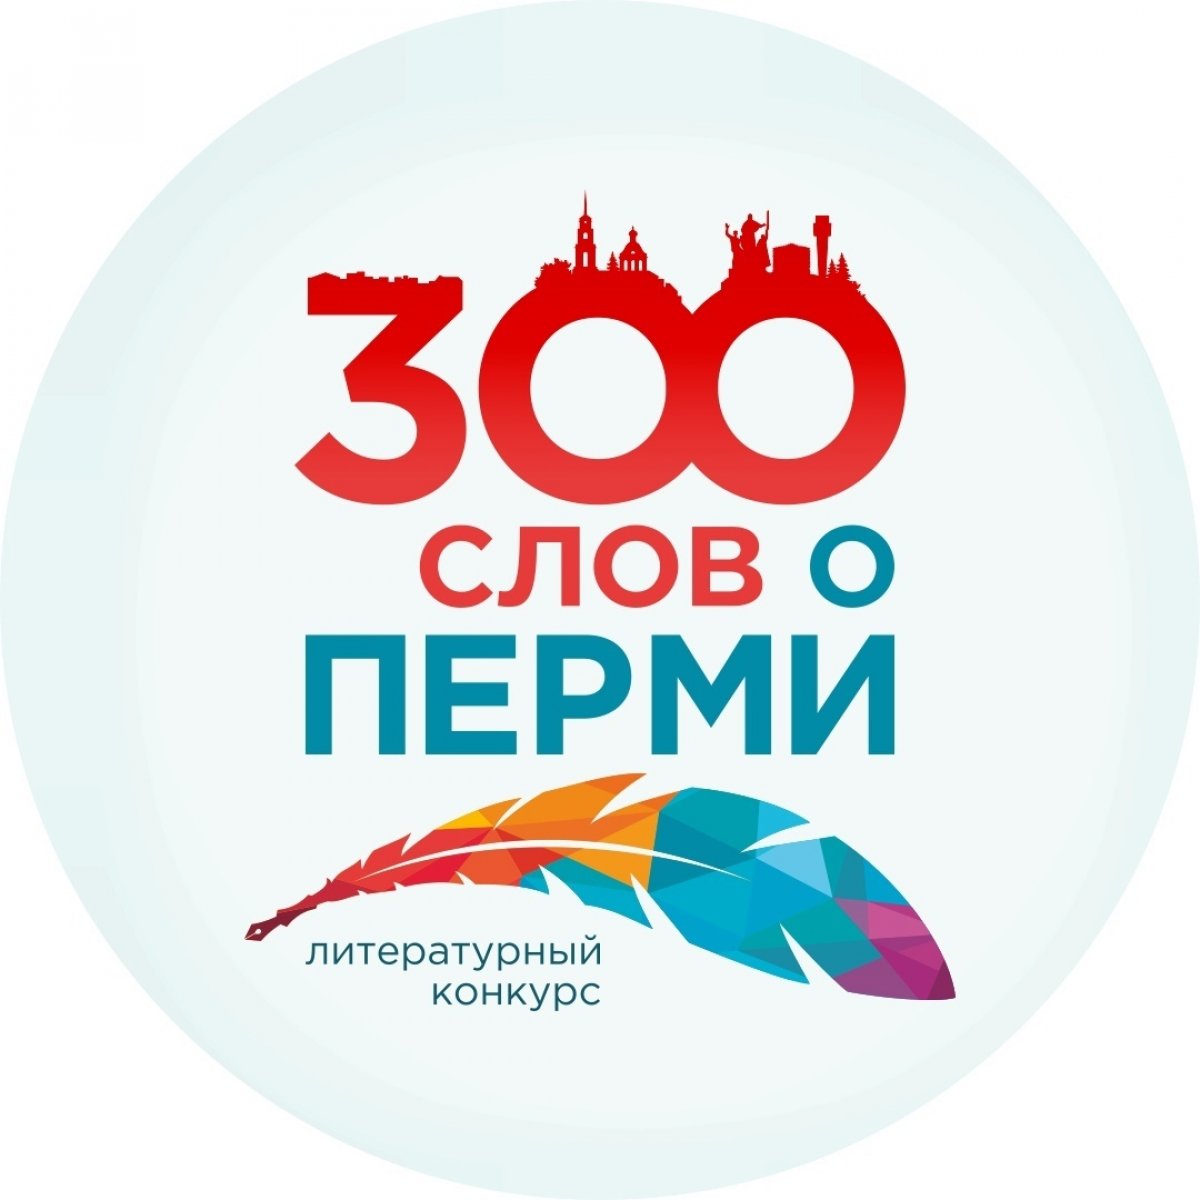 "300 слов о Перми" - уникальный литературный проект, посвящённый 300-летию города Перми, в котором можете поучаствовать и вы!